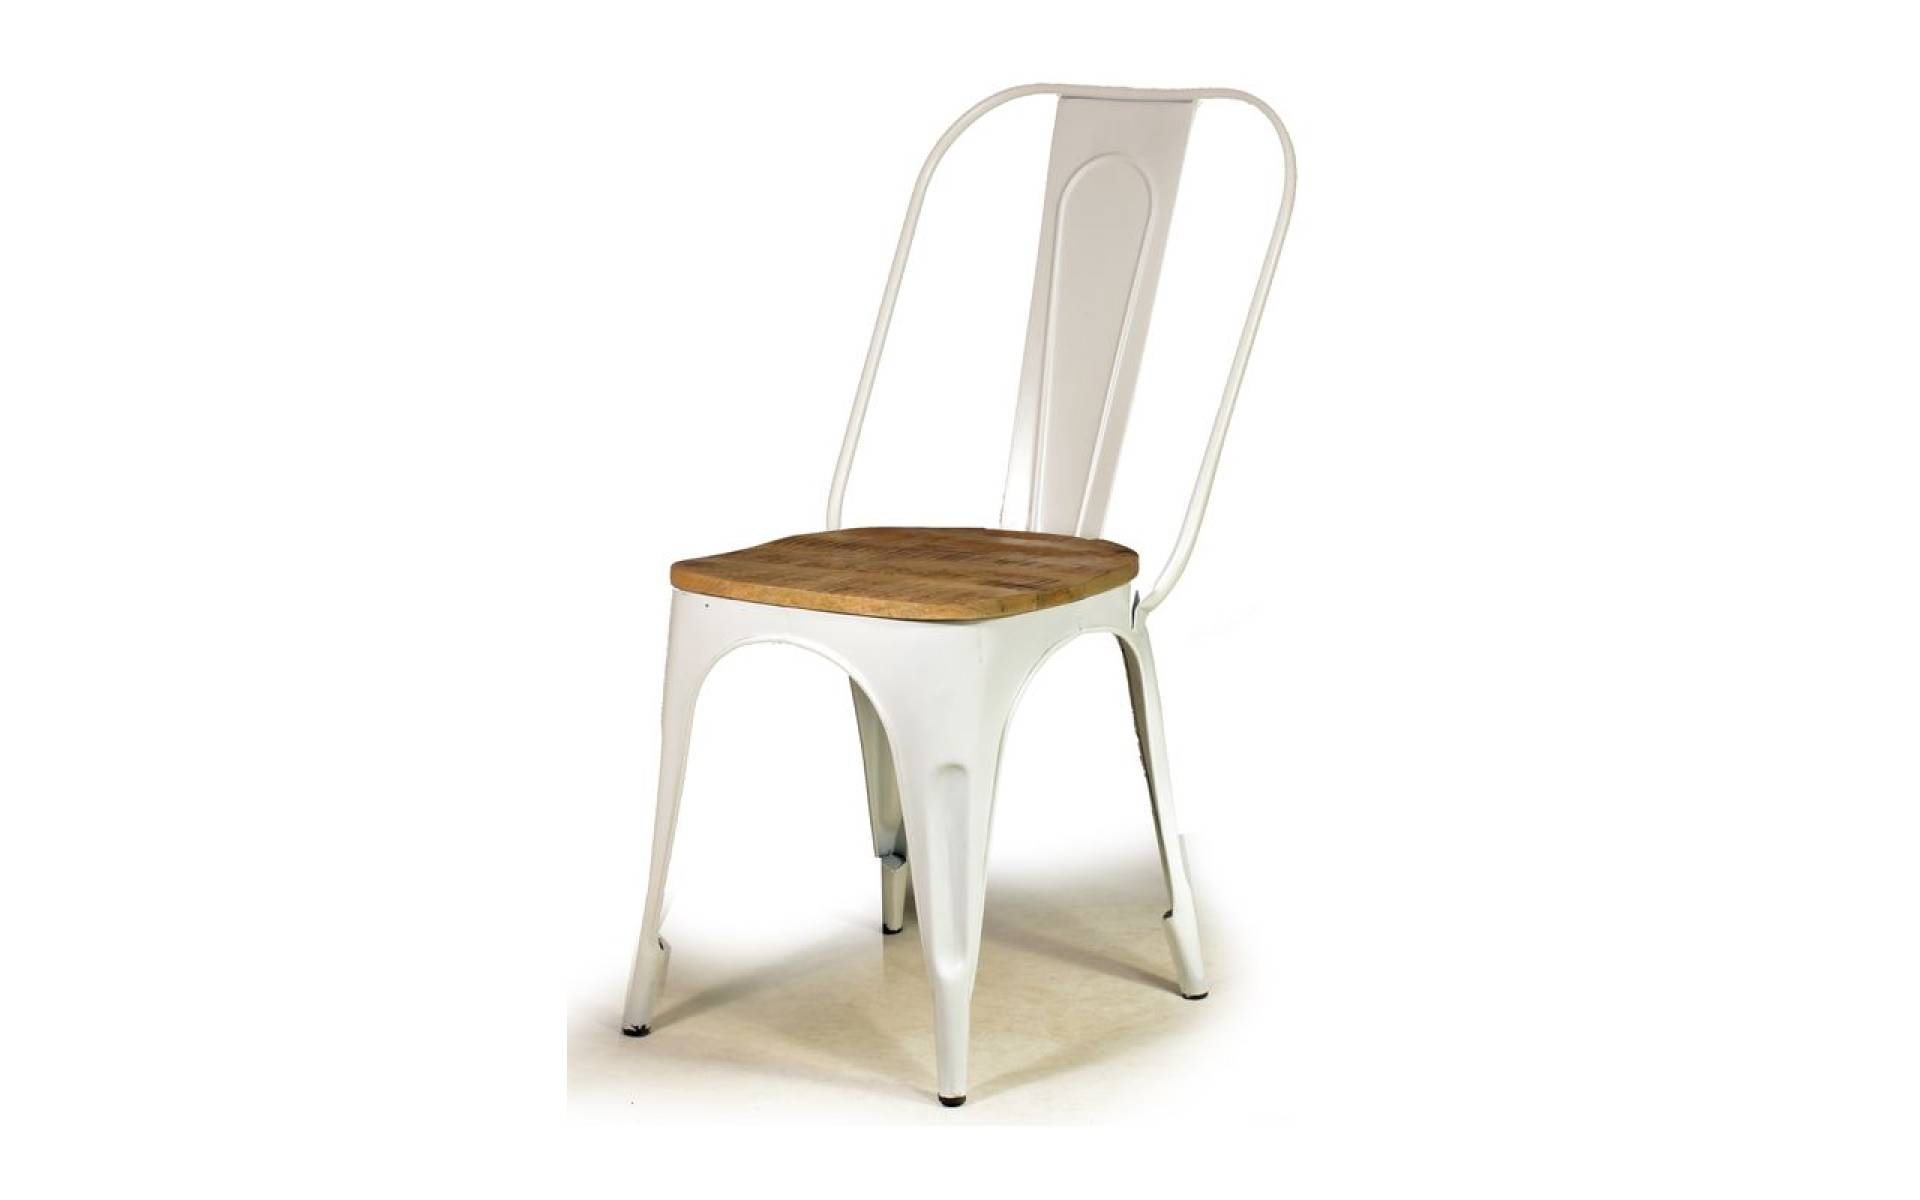 Kovová stolička s dreveným teakovým sedákom, 59x42x92cm